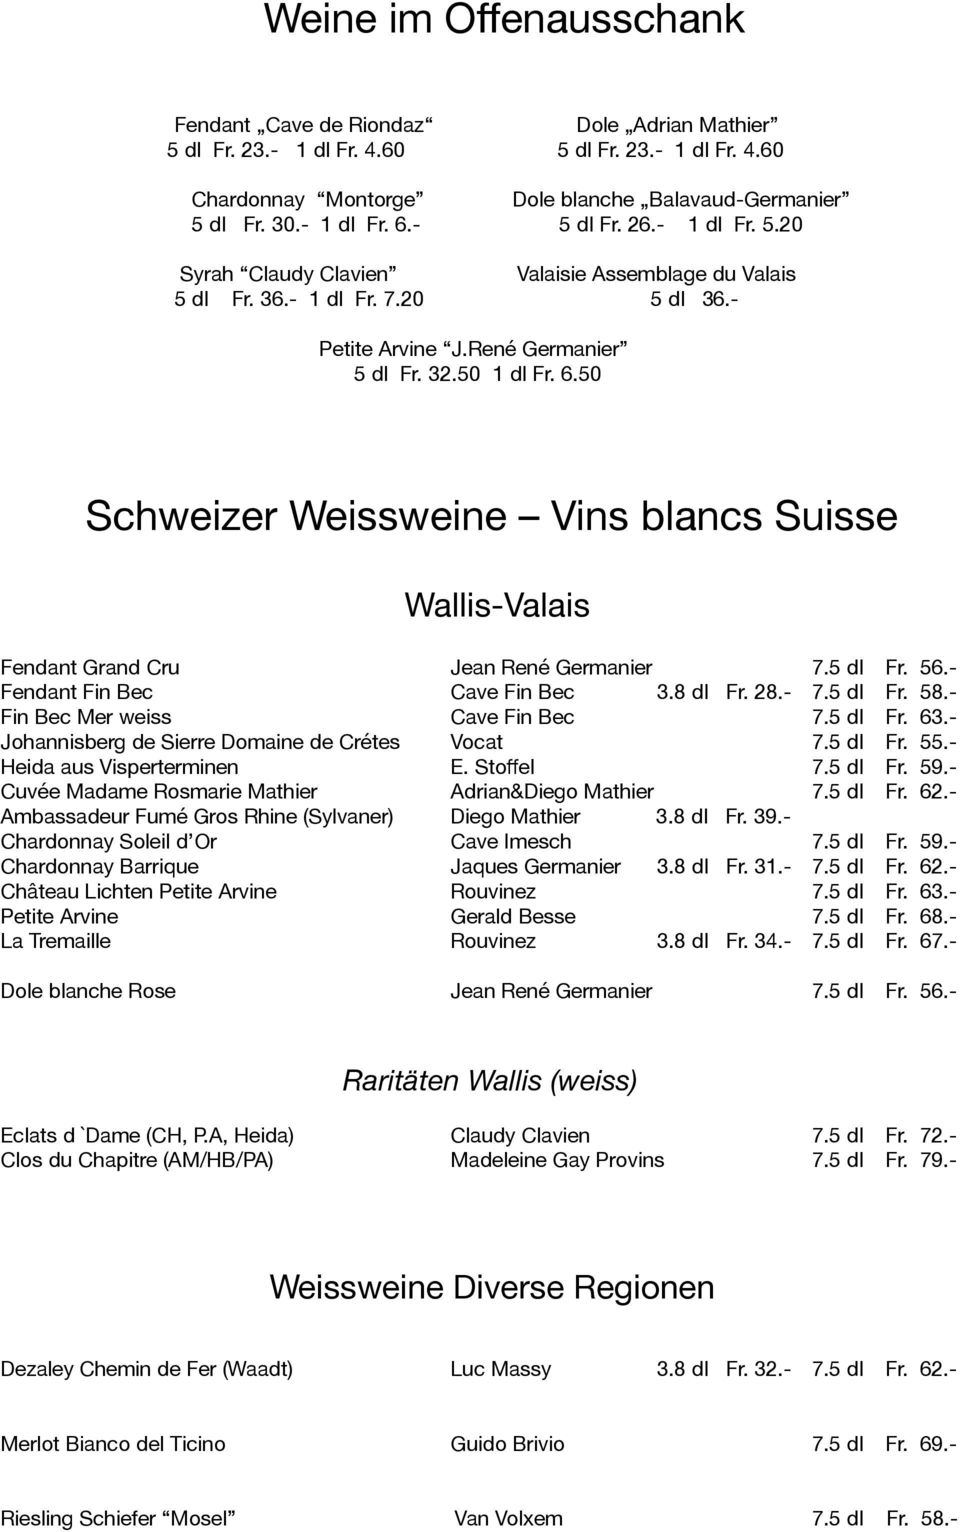 50 Schweizer Weissweine Vins blancs Suisse Wallis-Valais Fendant Grand Cru Jean René Germanier 7.5 dl Fr. 56.- Fendant Fin Bec Cave Fin Bec 3.8 dl Fr. 28.- 7.5 dl Fr. 58.